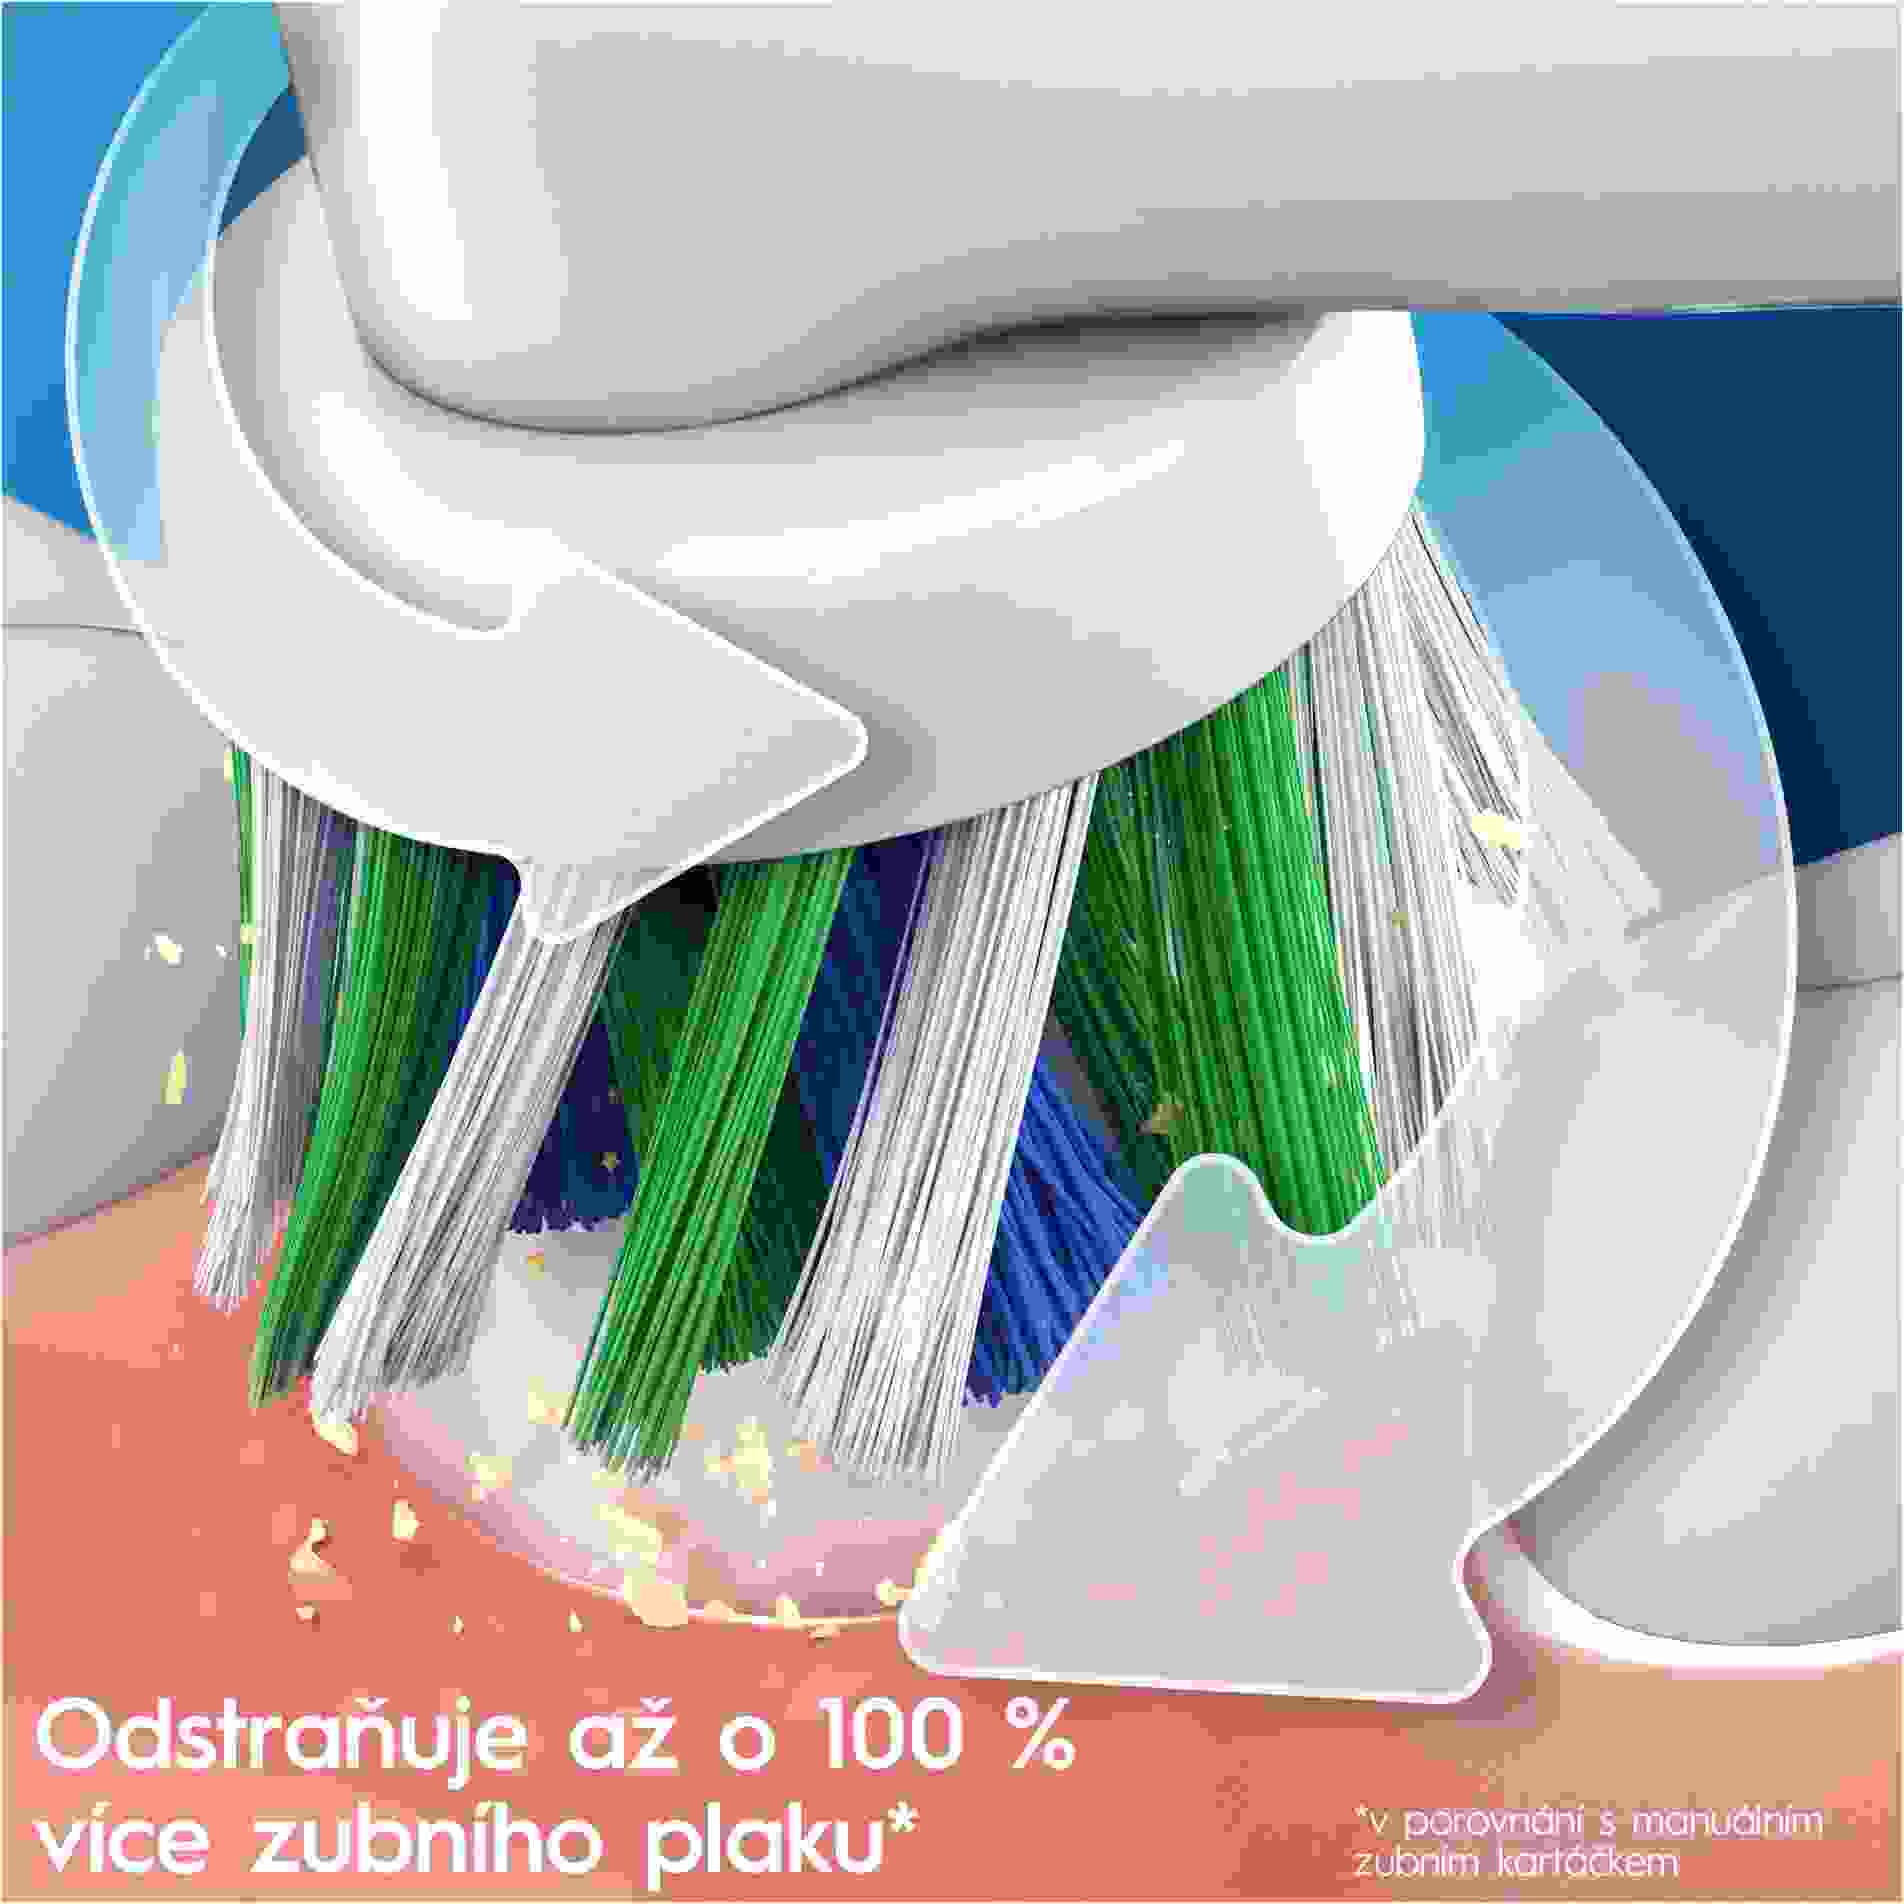 Oral-B Vitality PRO Protect X D103 Lilac Mist elektrický zubní kartáček, rotační, časovač, fialová3 